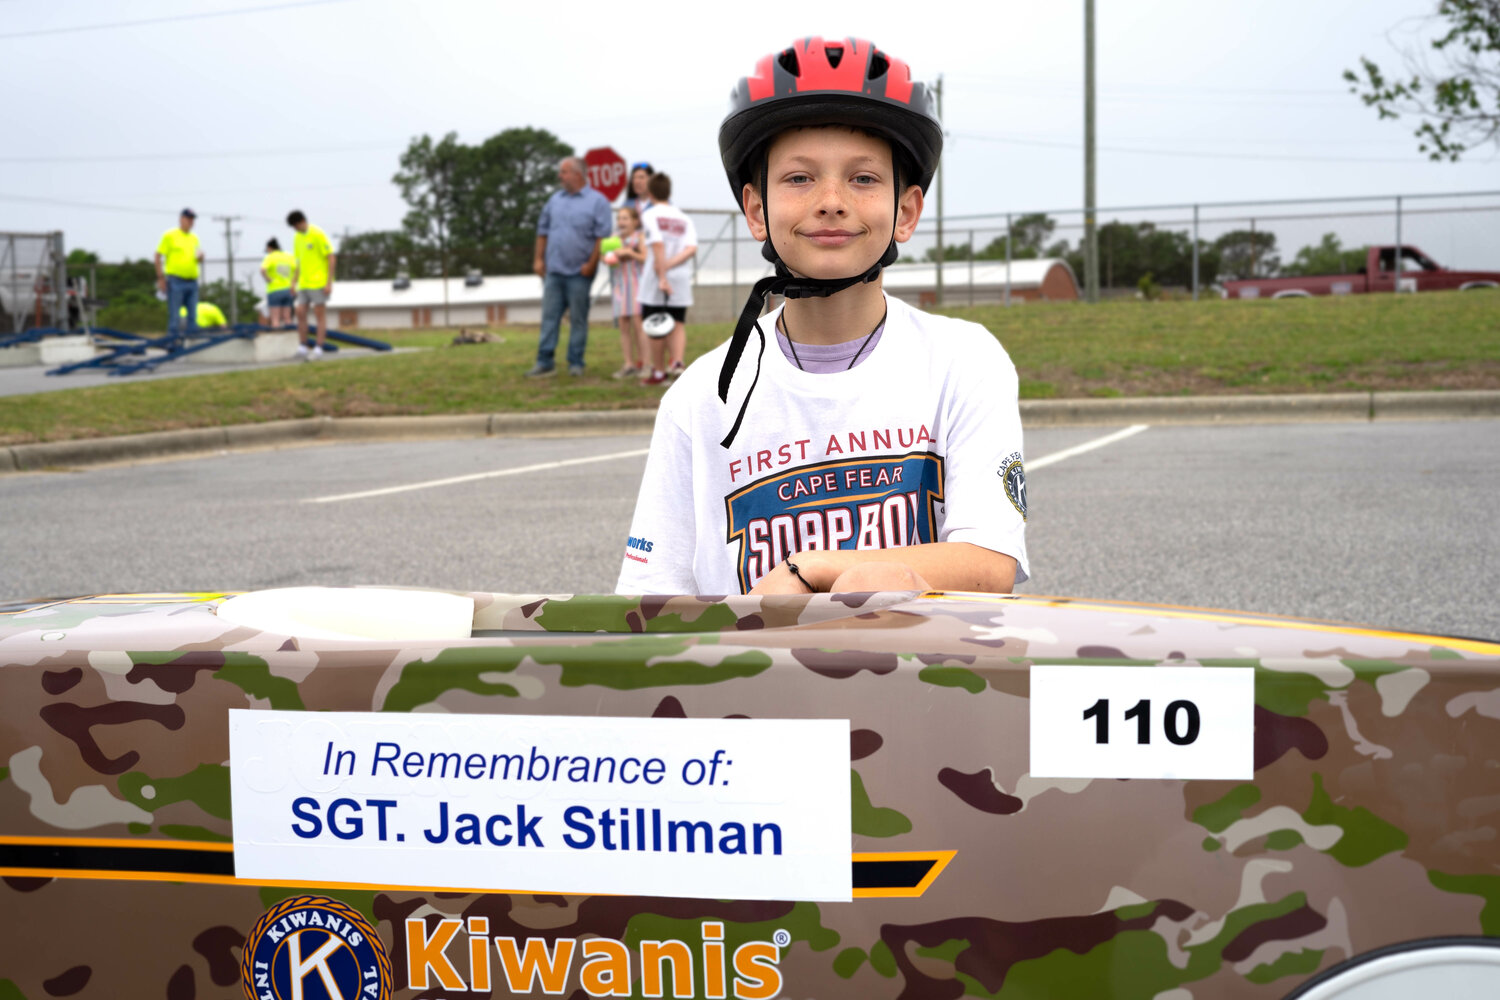 Jackson Stillman